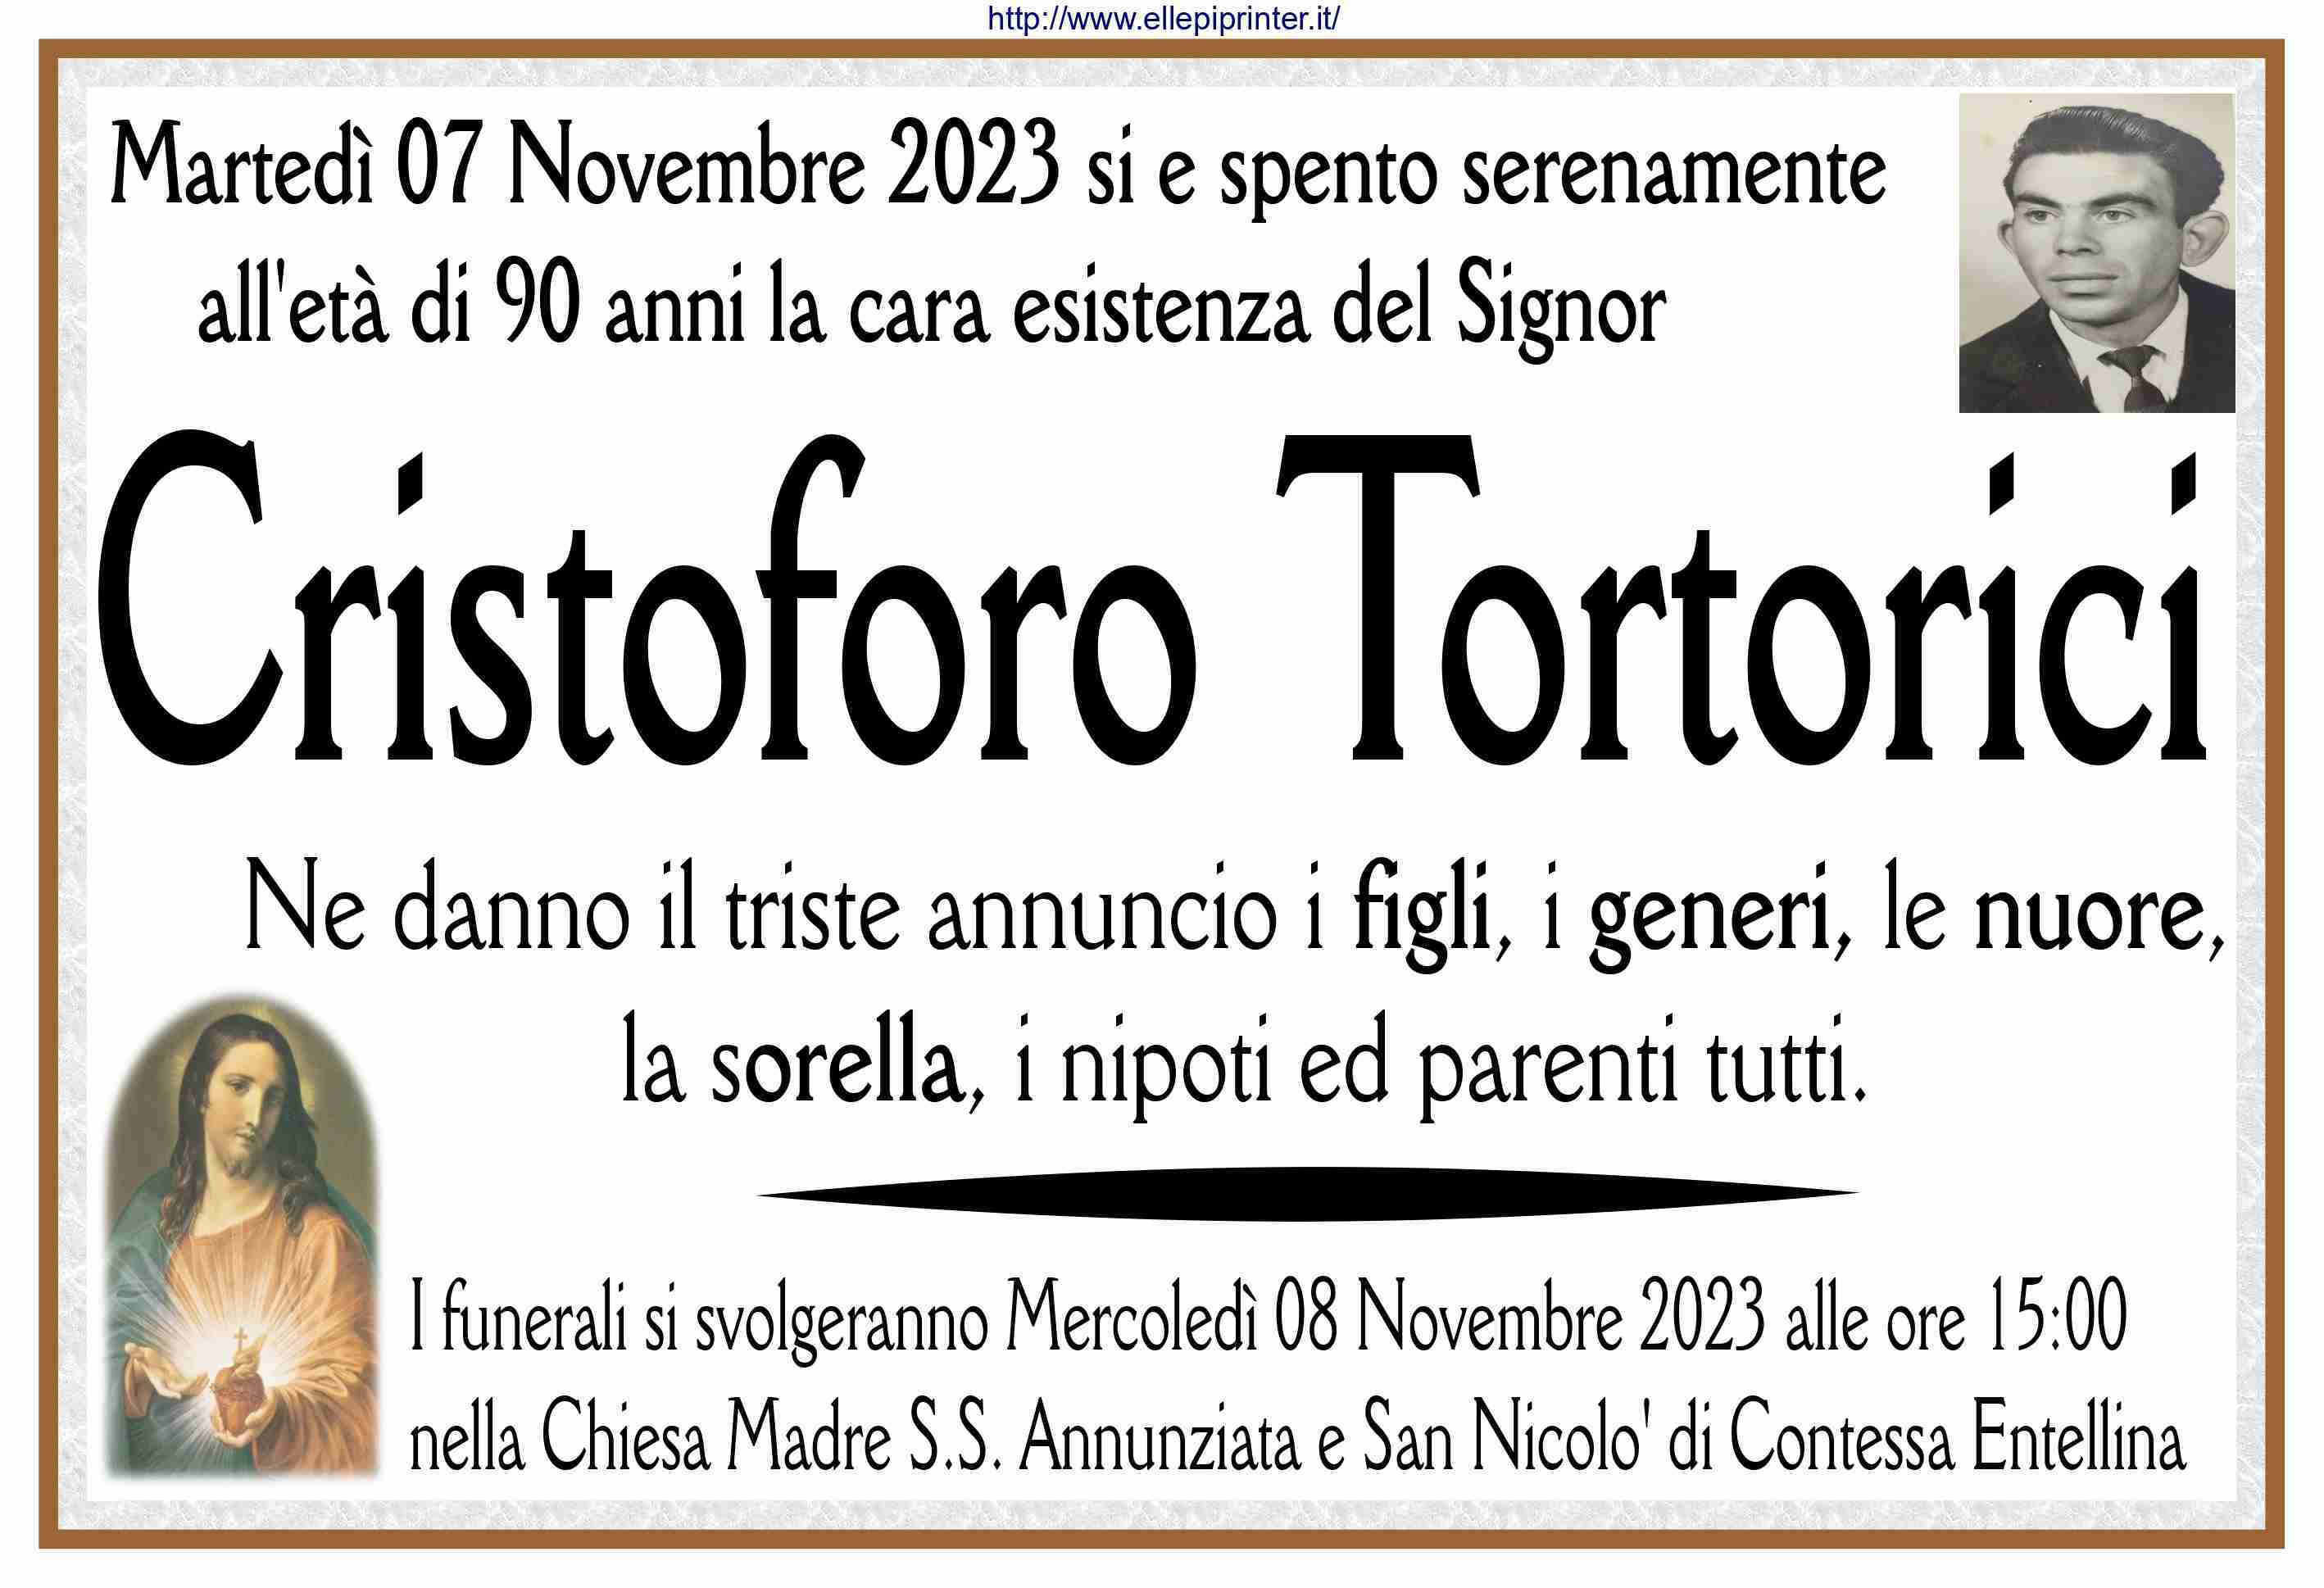 Cristoforo Tortorici